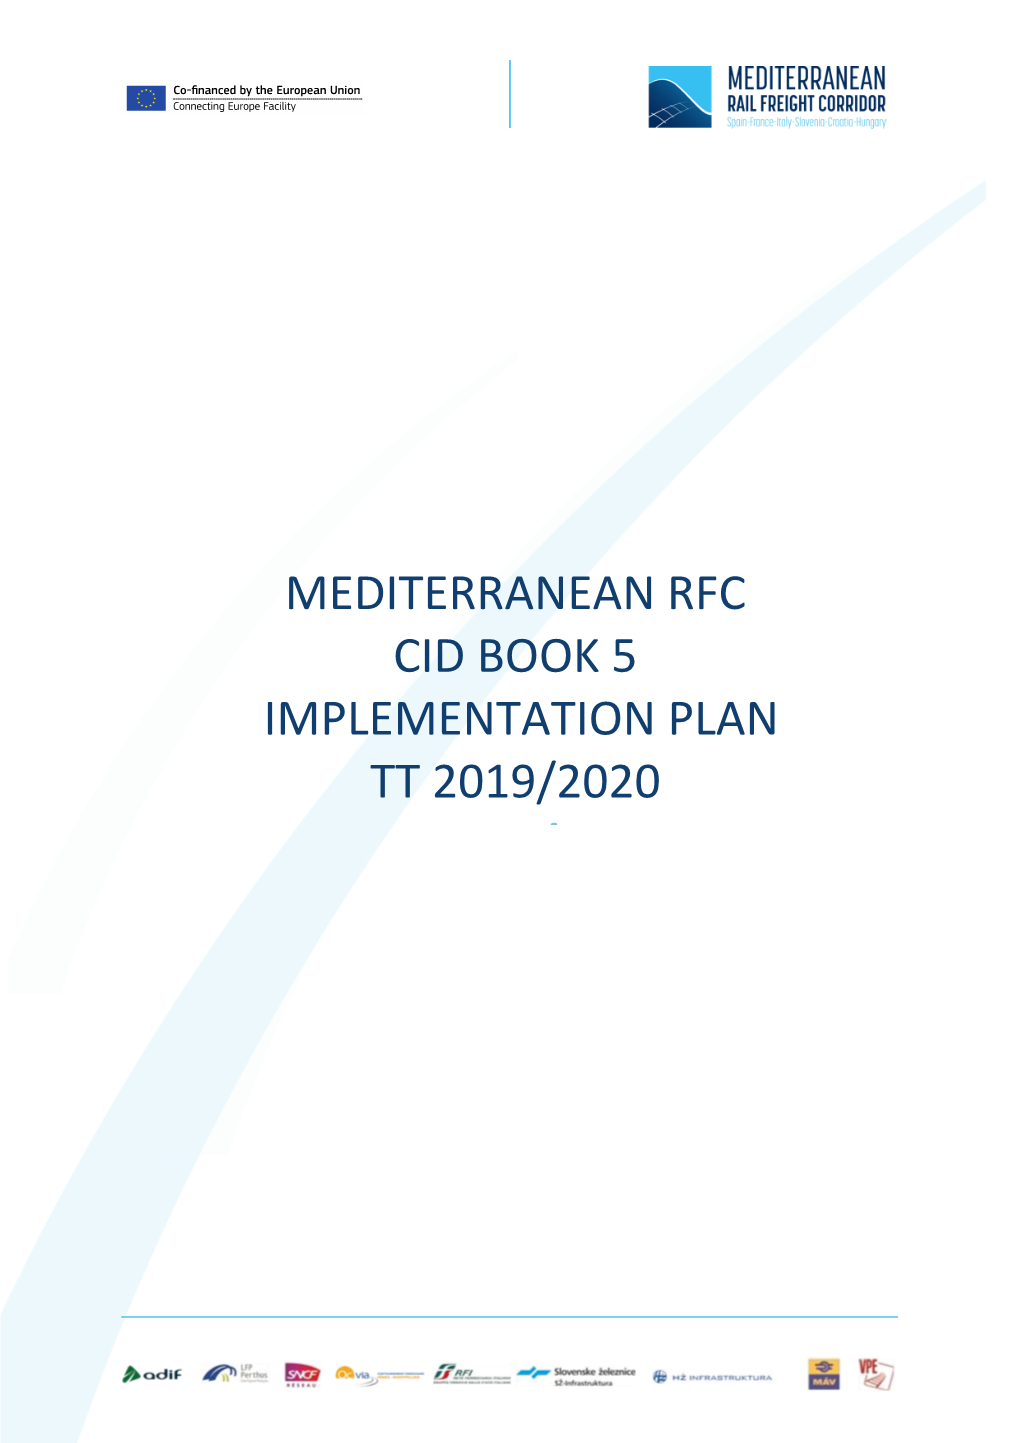 Mediterranean Rfc Cid Book 5 Implementation Plan Tt 2019/2020 Tt 2018/2019